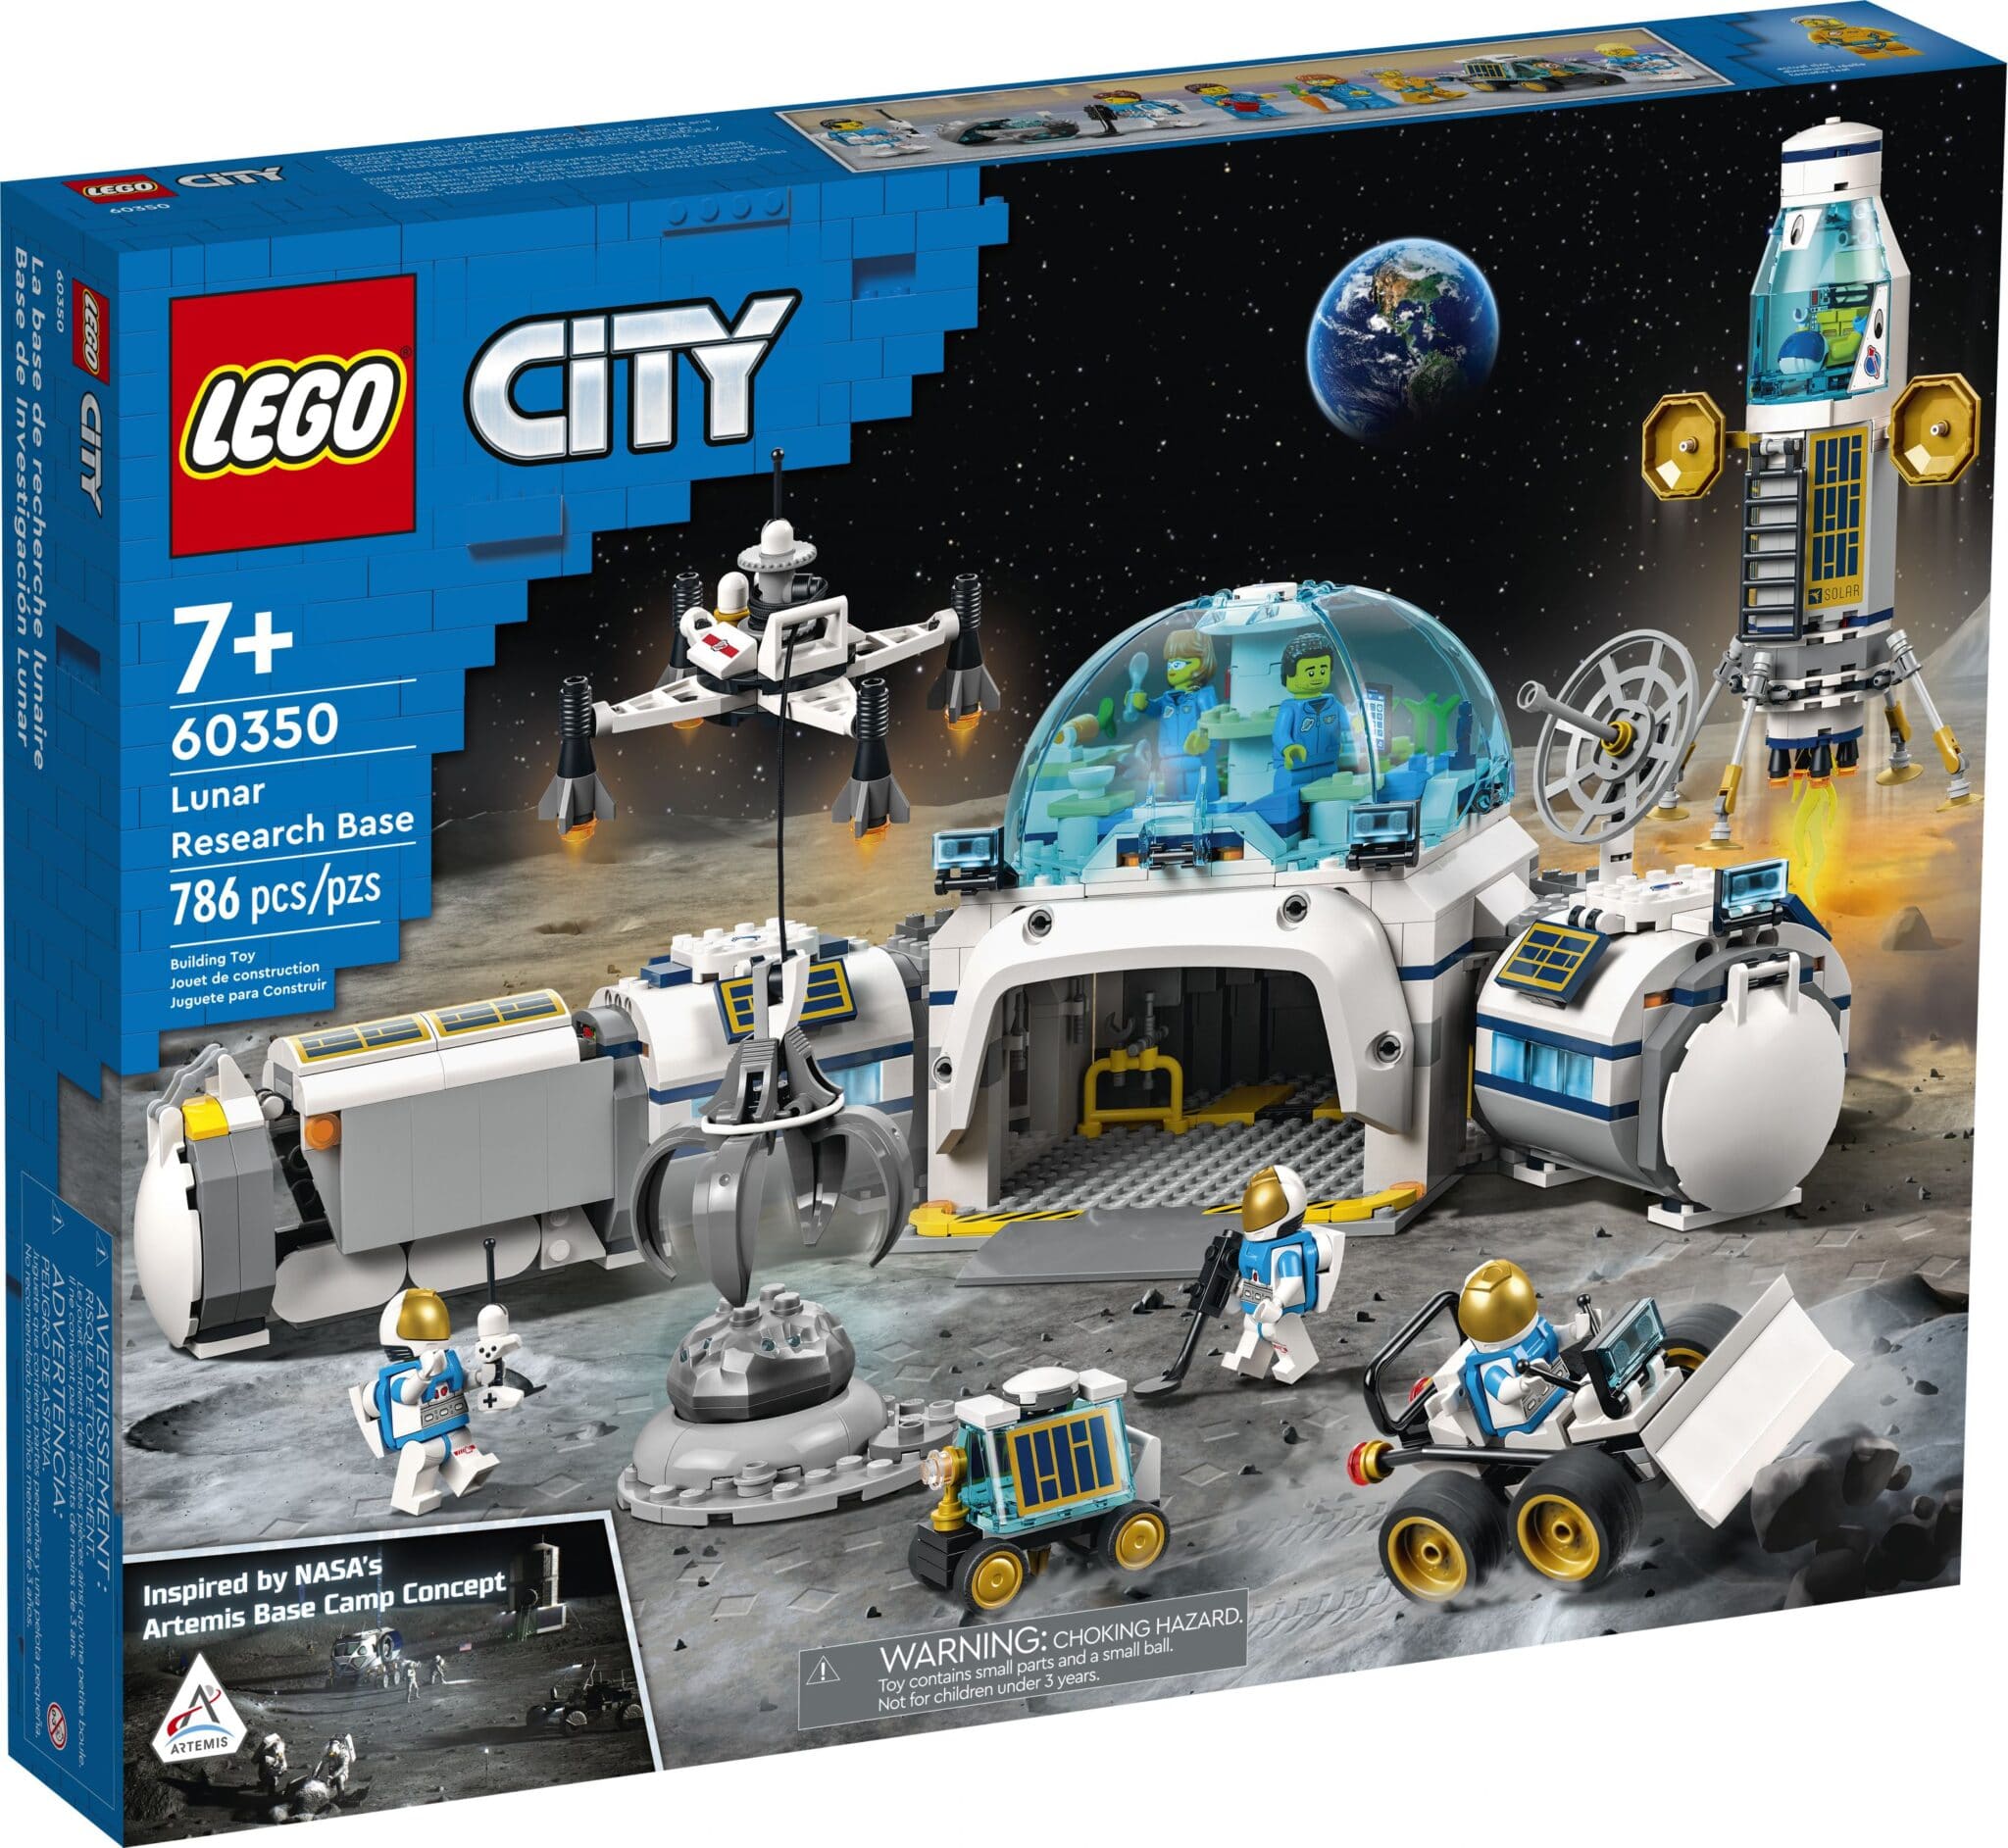 LEGO City 2022 Sets Revealed - The Brick